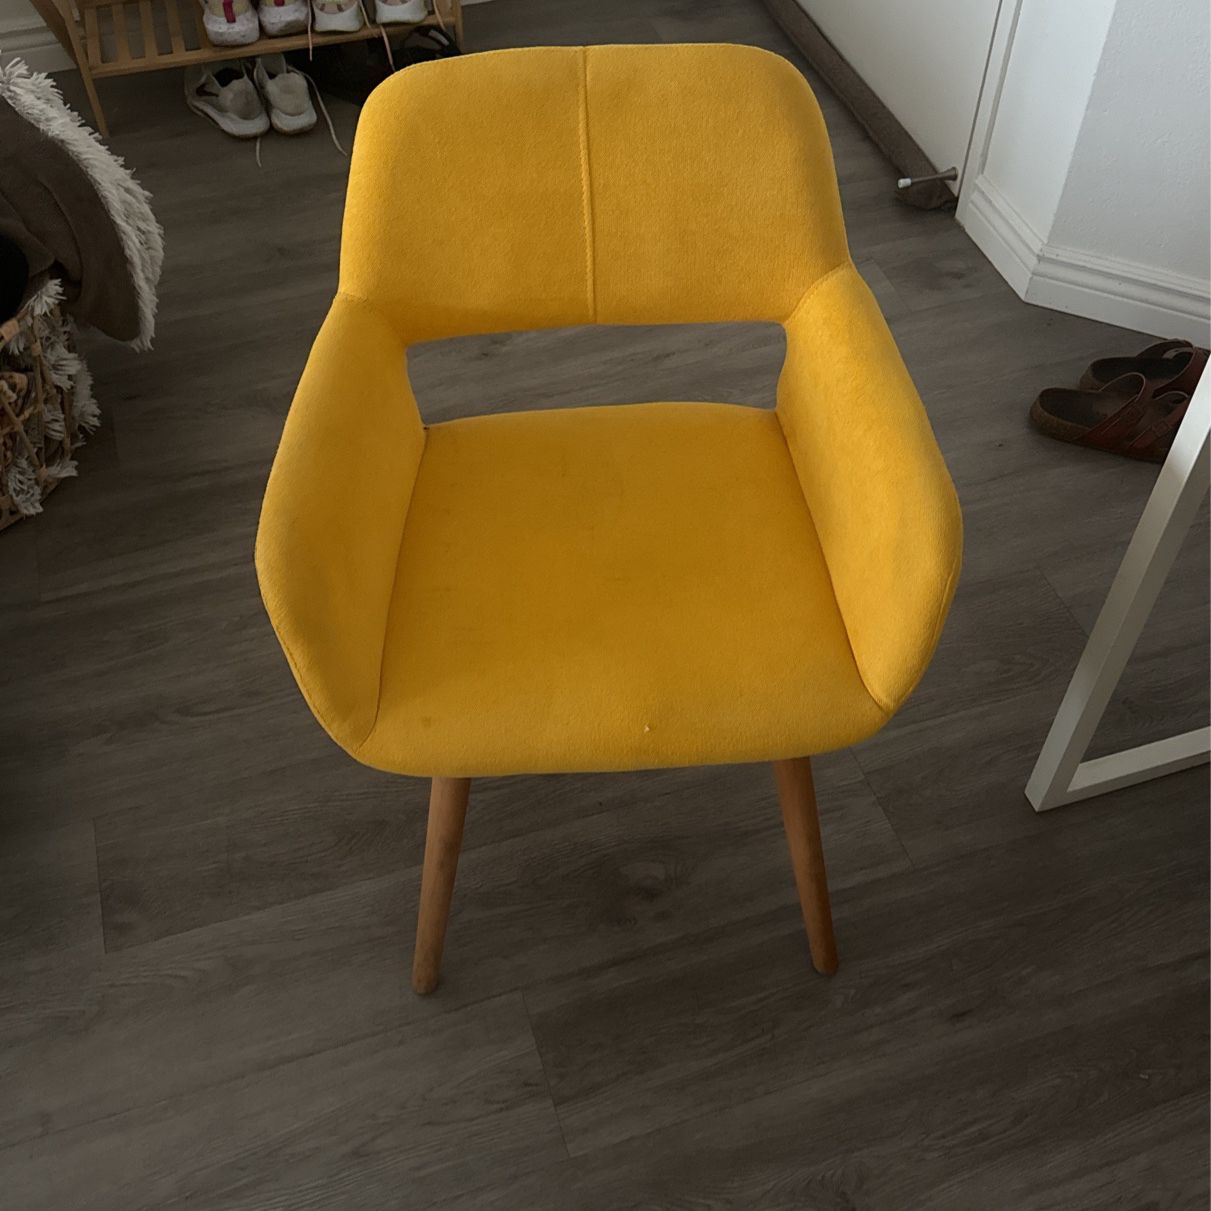 Retro Yellow chairs 